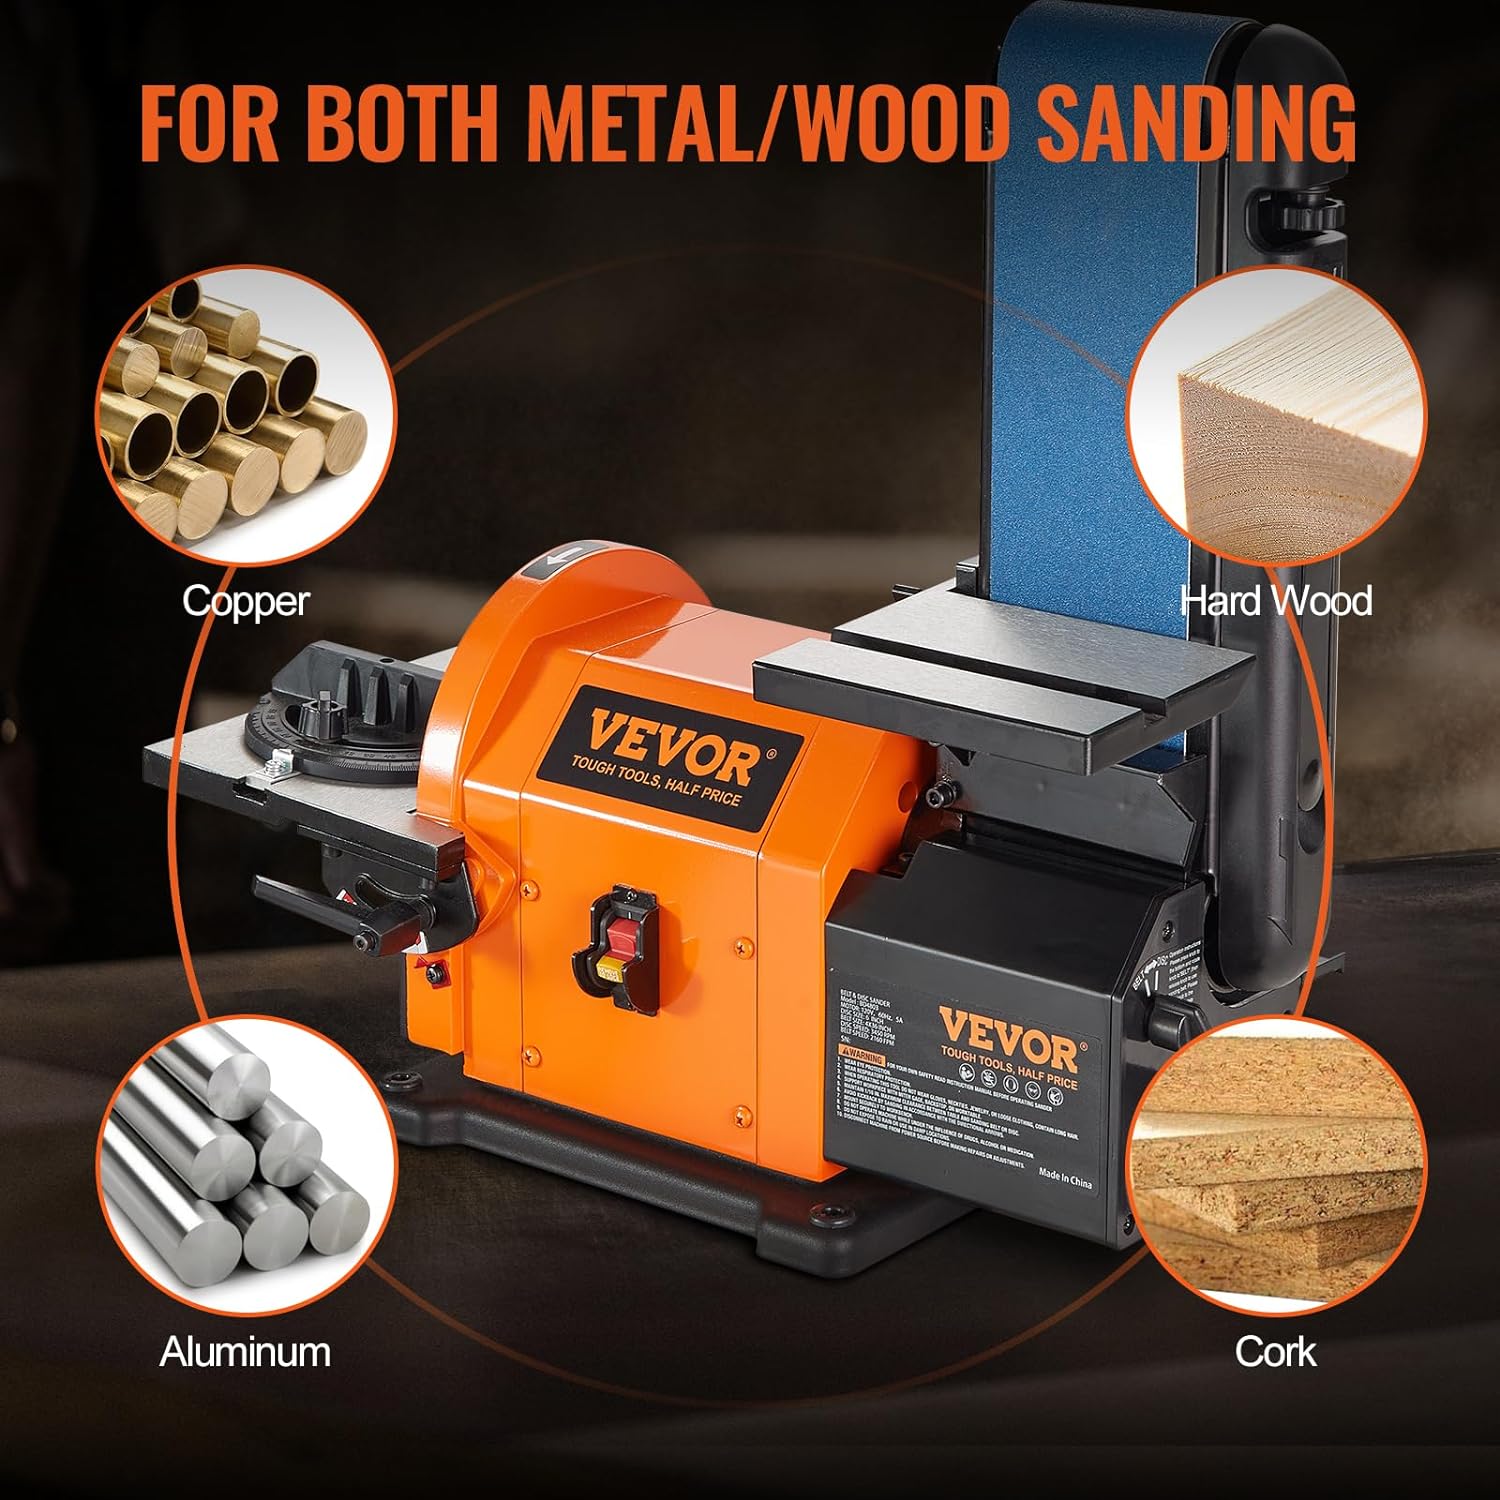 VEVOR Professional Belt Sander, 8 Disc Sander and 4 x 36 in. Belt Sander with 5A Induction Motor Cast Aluminum Worktable for Woodworking, Metalworking